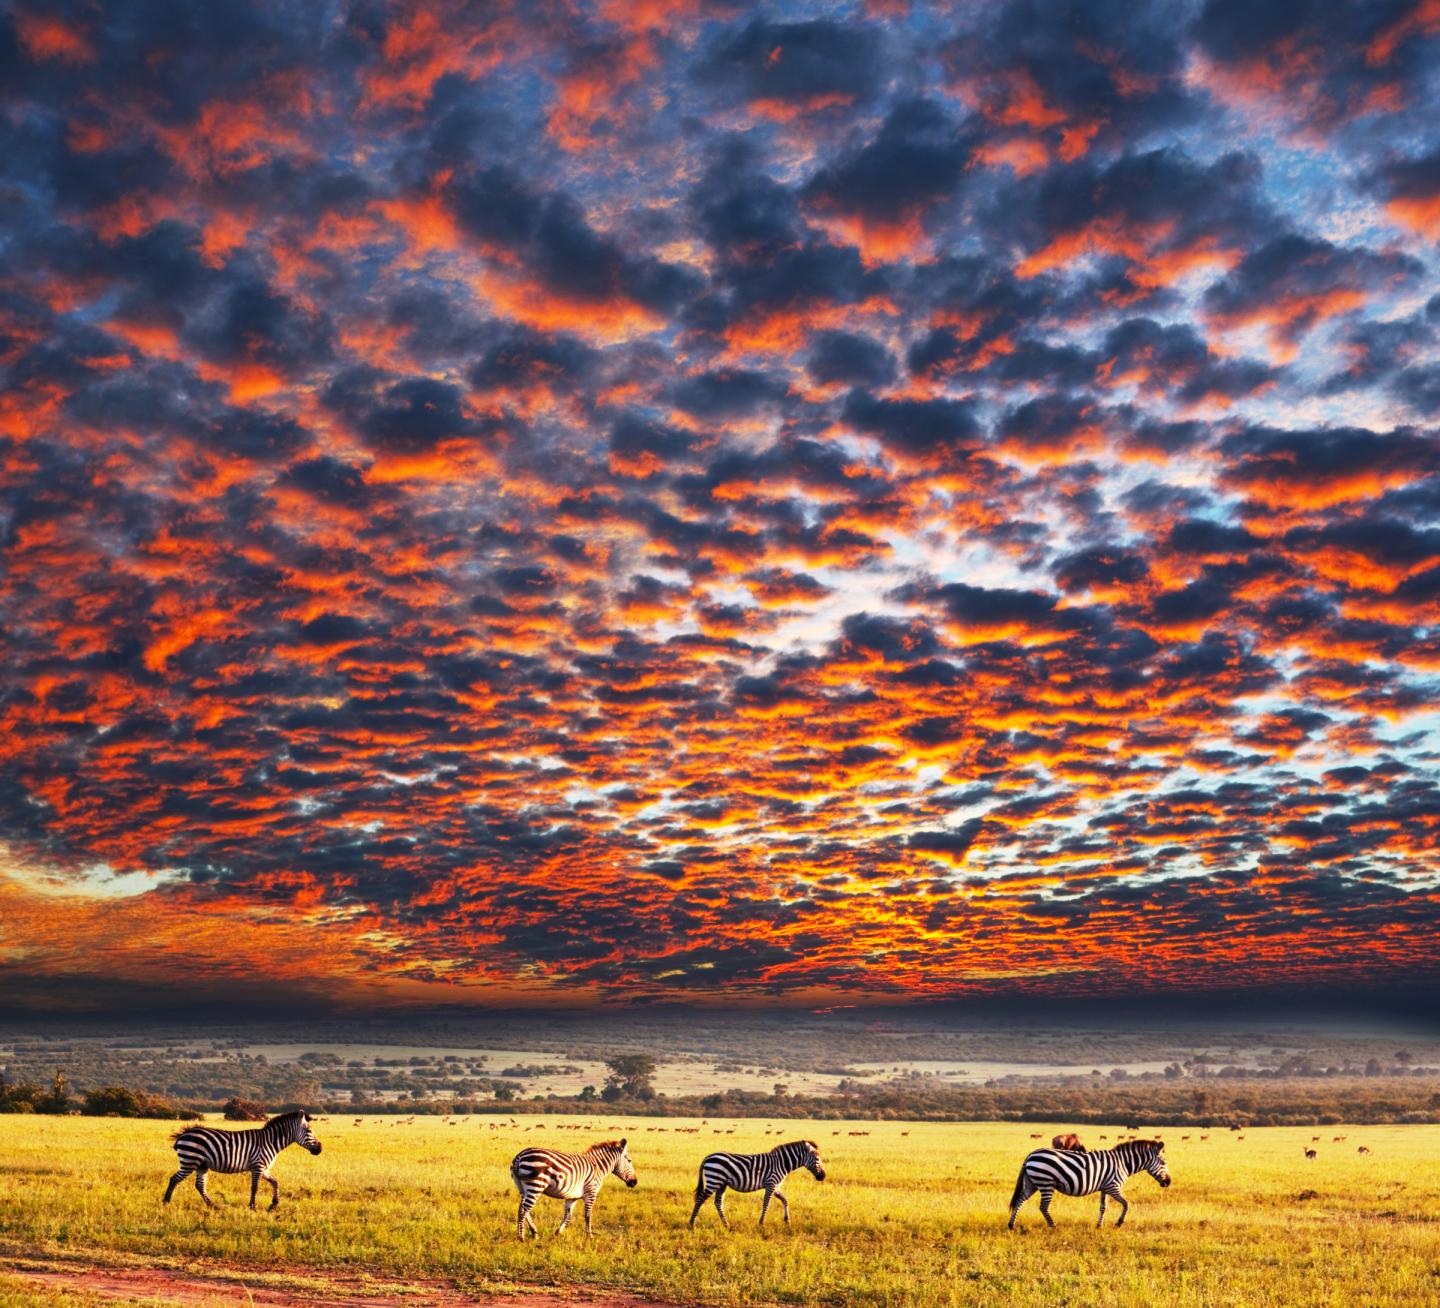 Zebras at Sunset